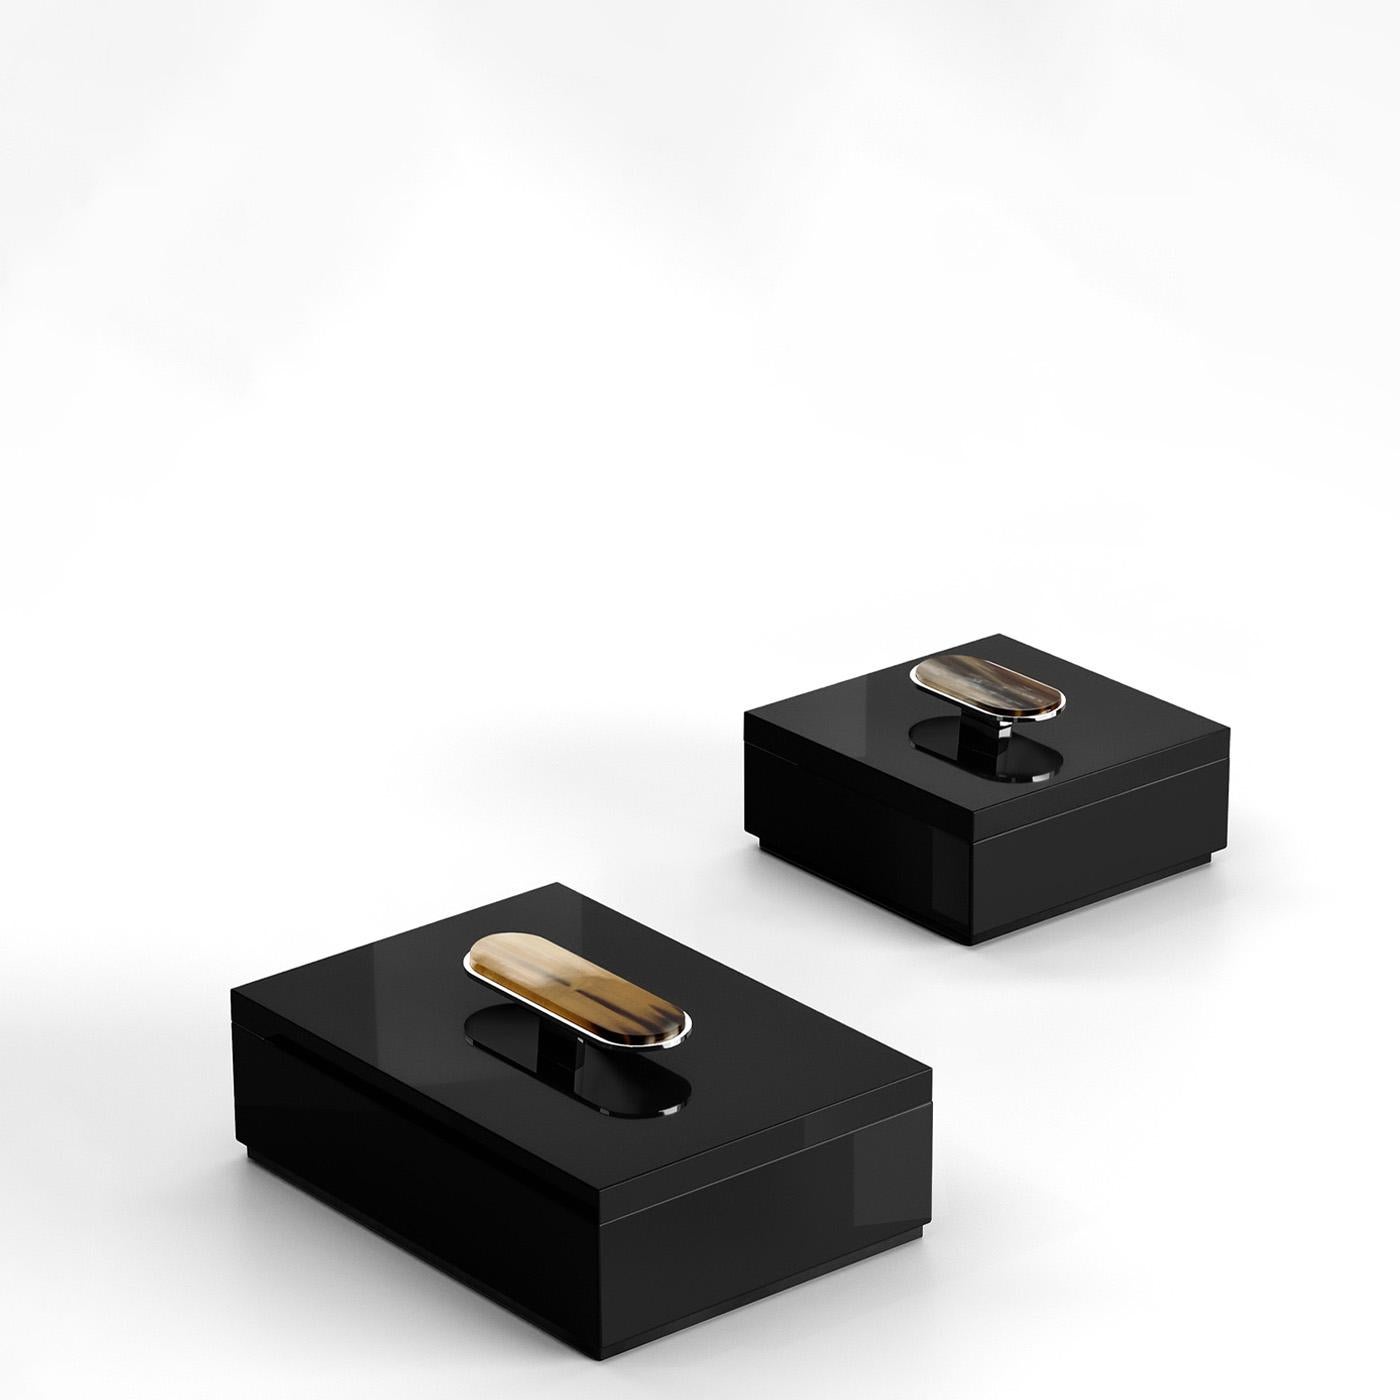 La boîte Priora présente une esthétique raffinée et une attention méticuleuse aux détails, ce qui en fait l'accessoire ultime pour ranger vos effets personnels. Fabriquée en bois laqué noir brillant, la boîte présente un élégant couvercle orné d'un